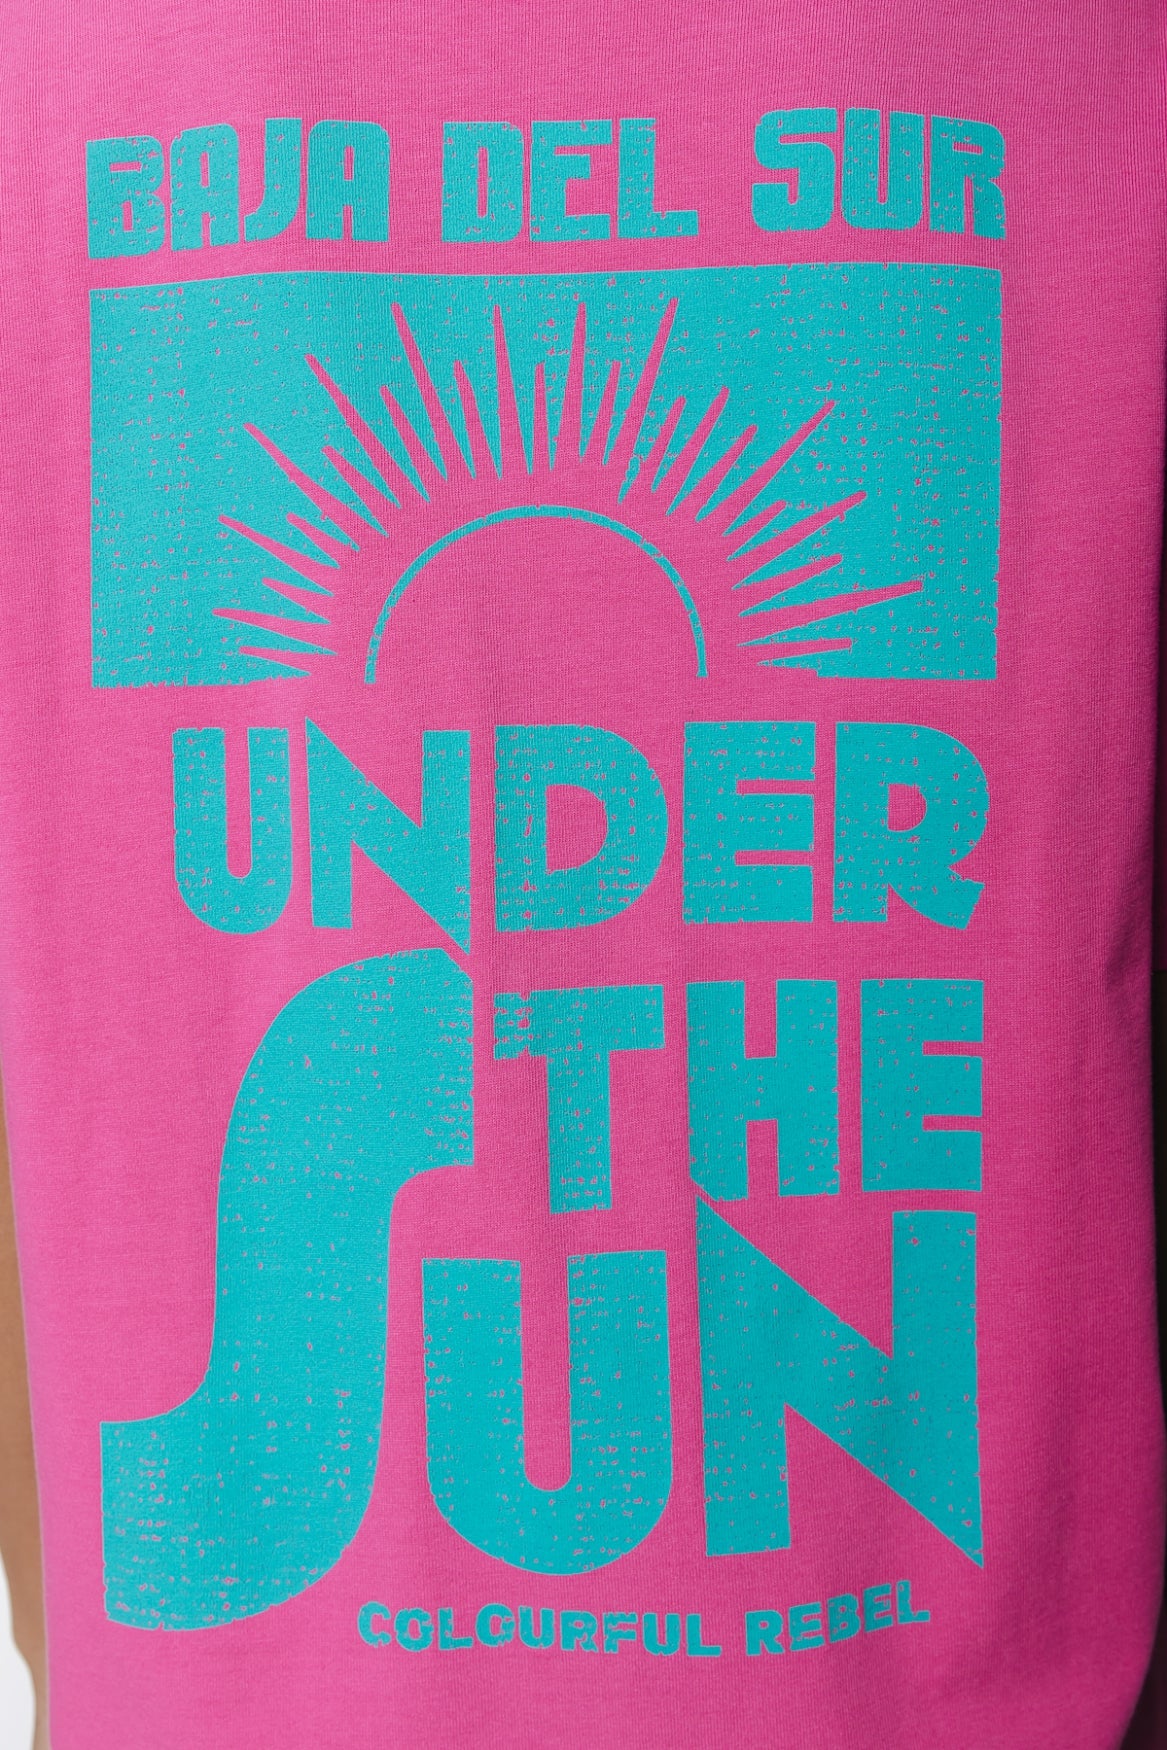 Under the sun tee dress - pink